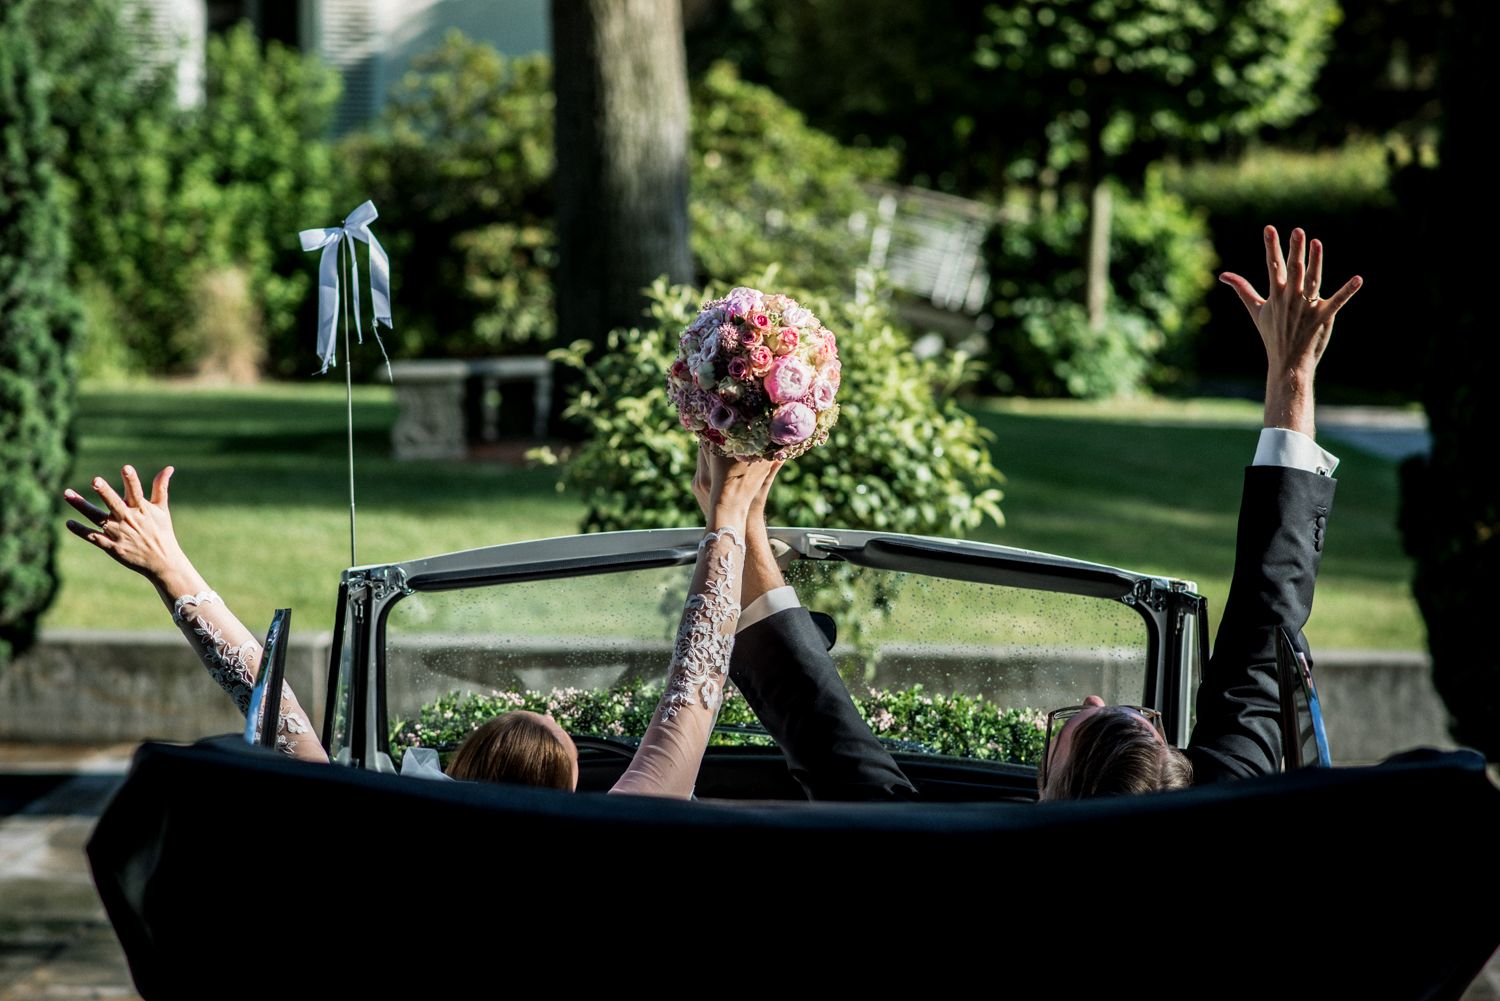 Das Brautpaar sitzt in einem Auto und hält gemeinsam den Brautstrauß.